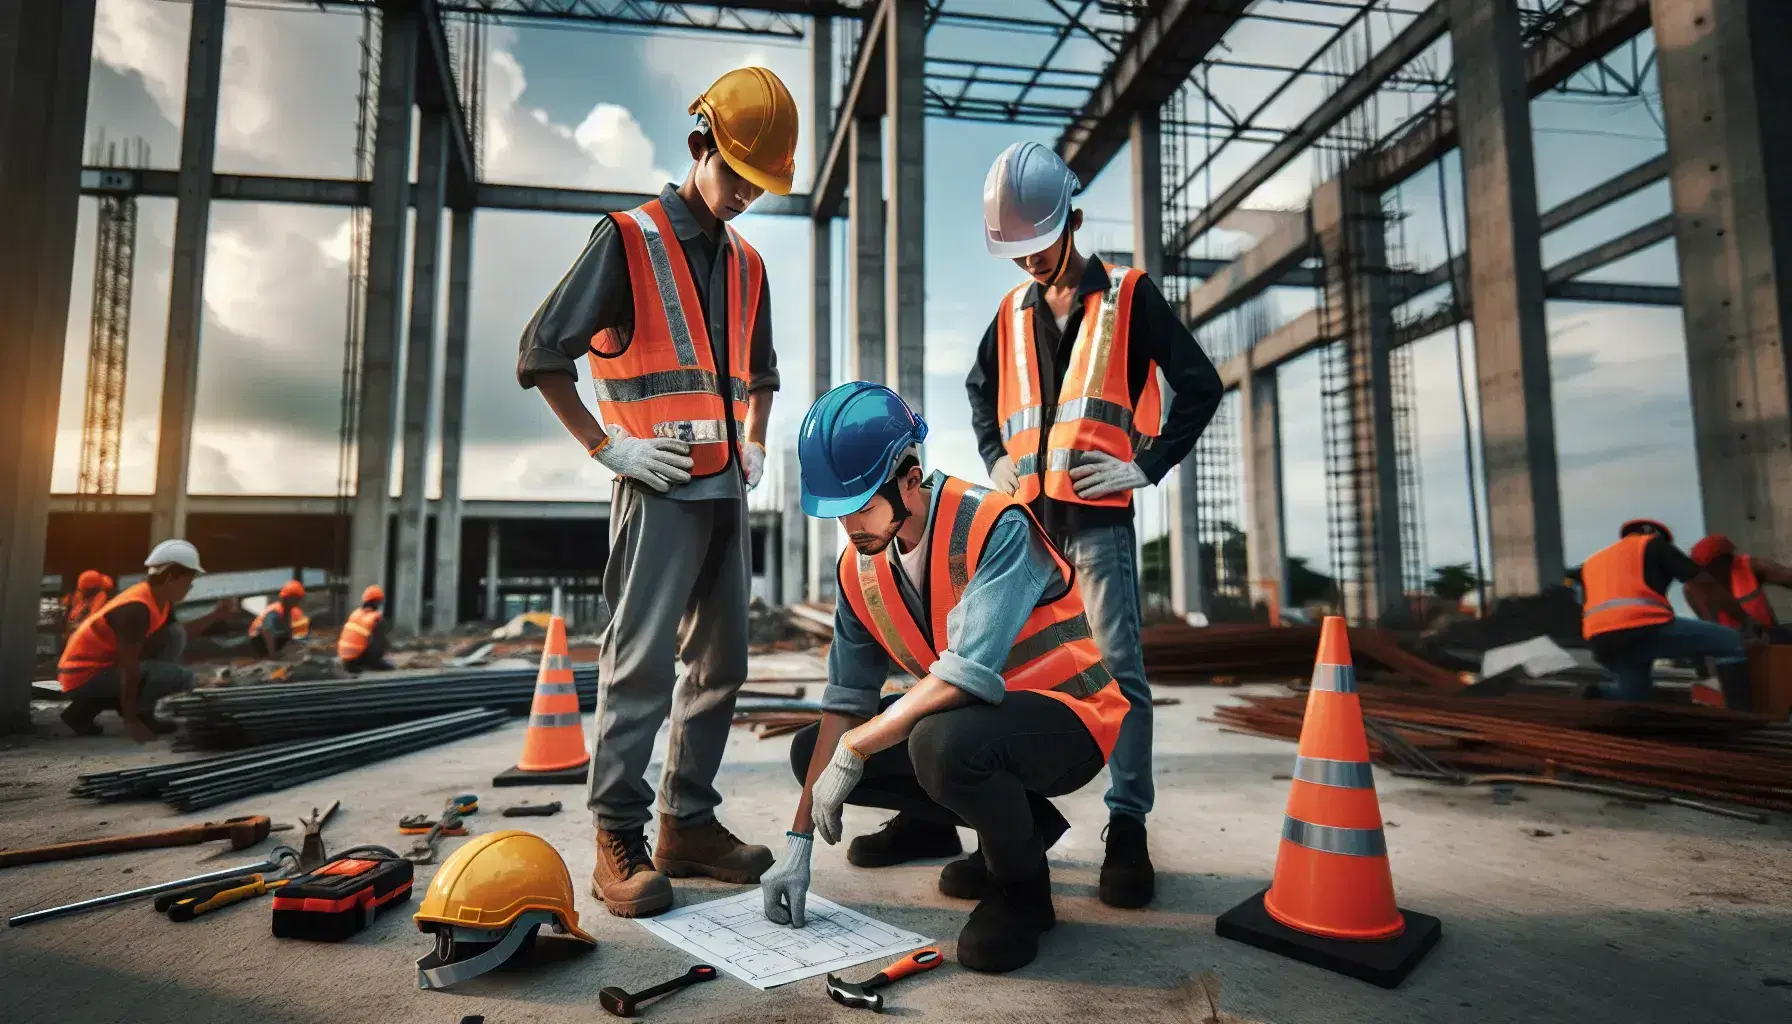 Trabajadores de construcción con cascos de seguridad y chalecos reflectantes en obra, inspeccionando herramientas y estructuras de acero, bajo cielo parcialmente nublado.